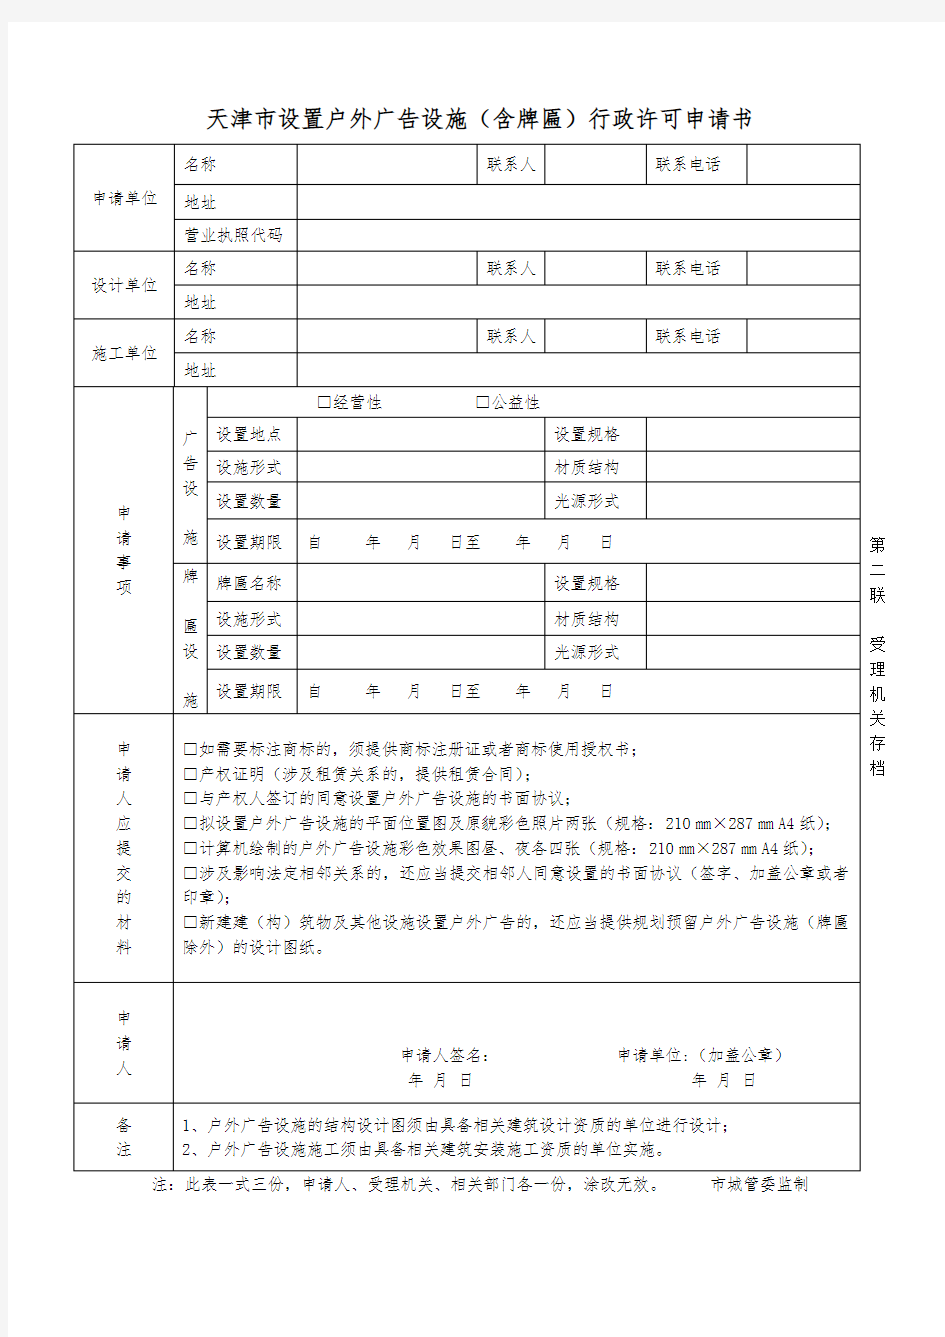 1.1天津市设置户外广告设施(含牌匾)行政许可申请书